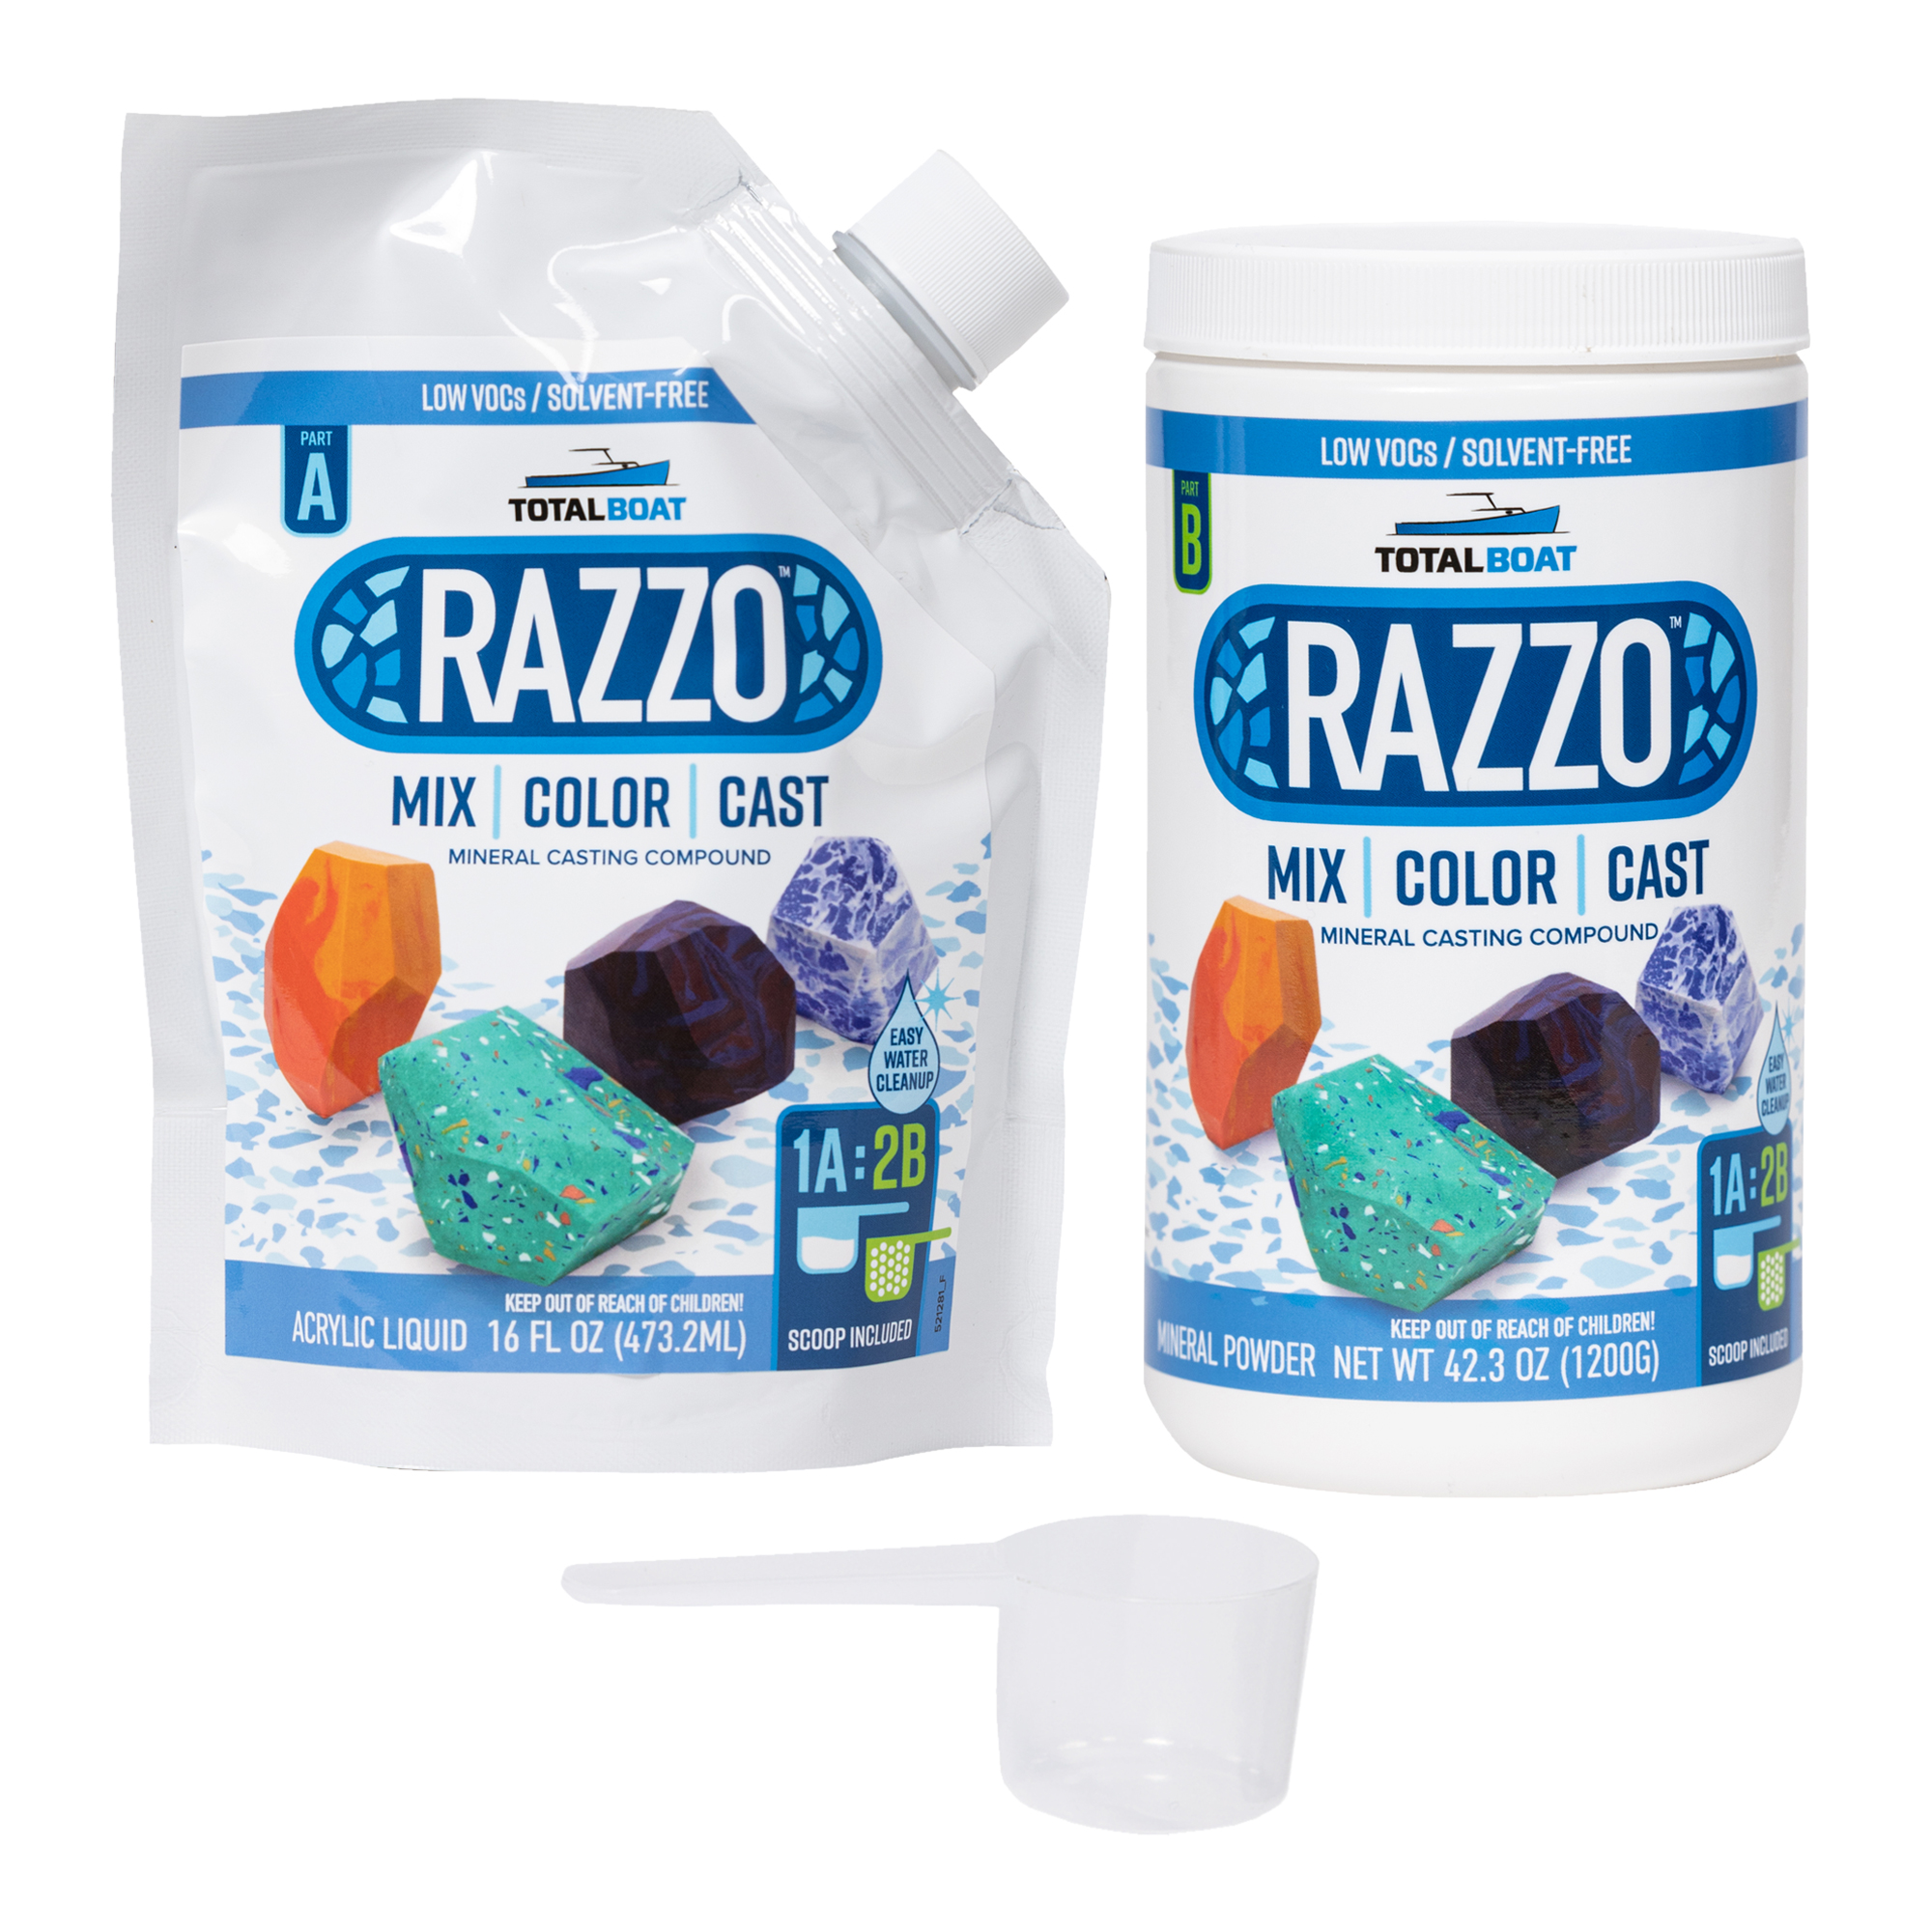 TotalBoat Razzo Mineral Casting Compound Kits